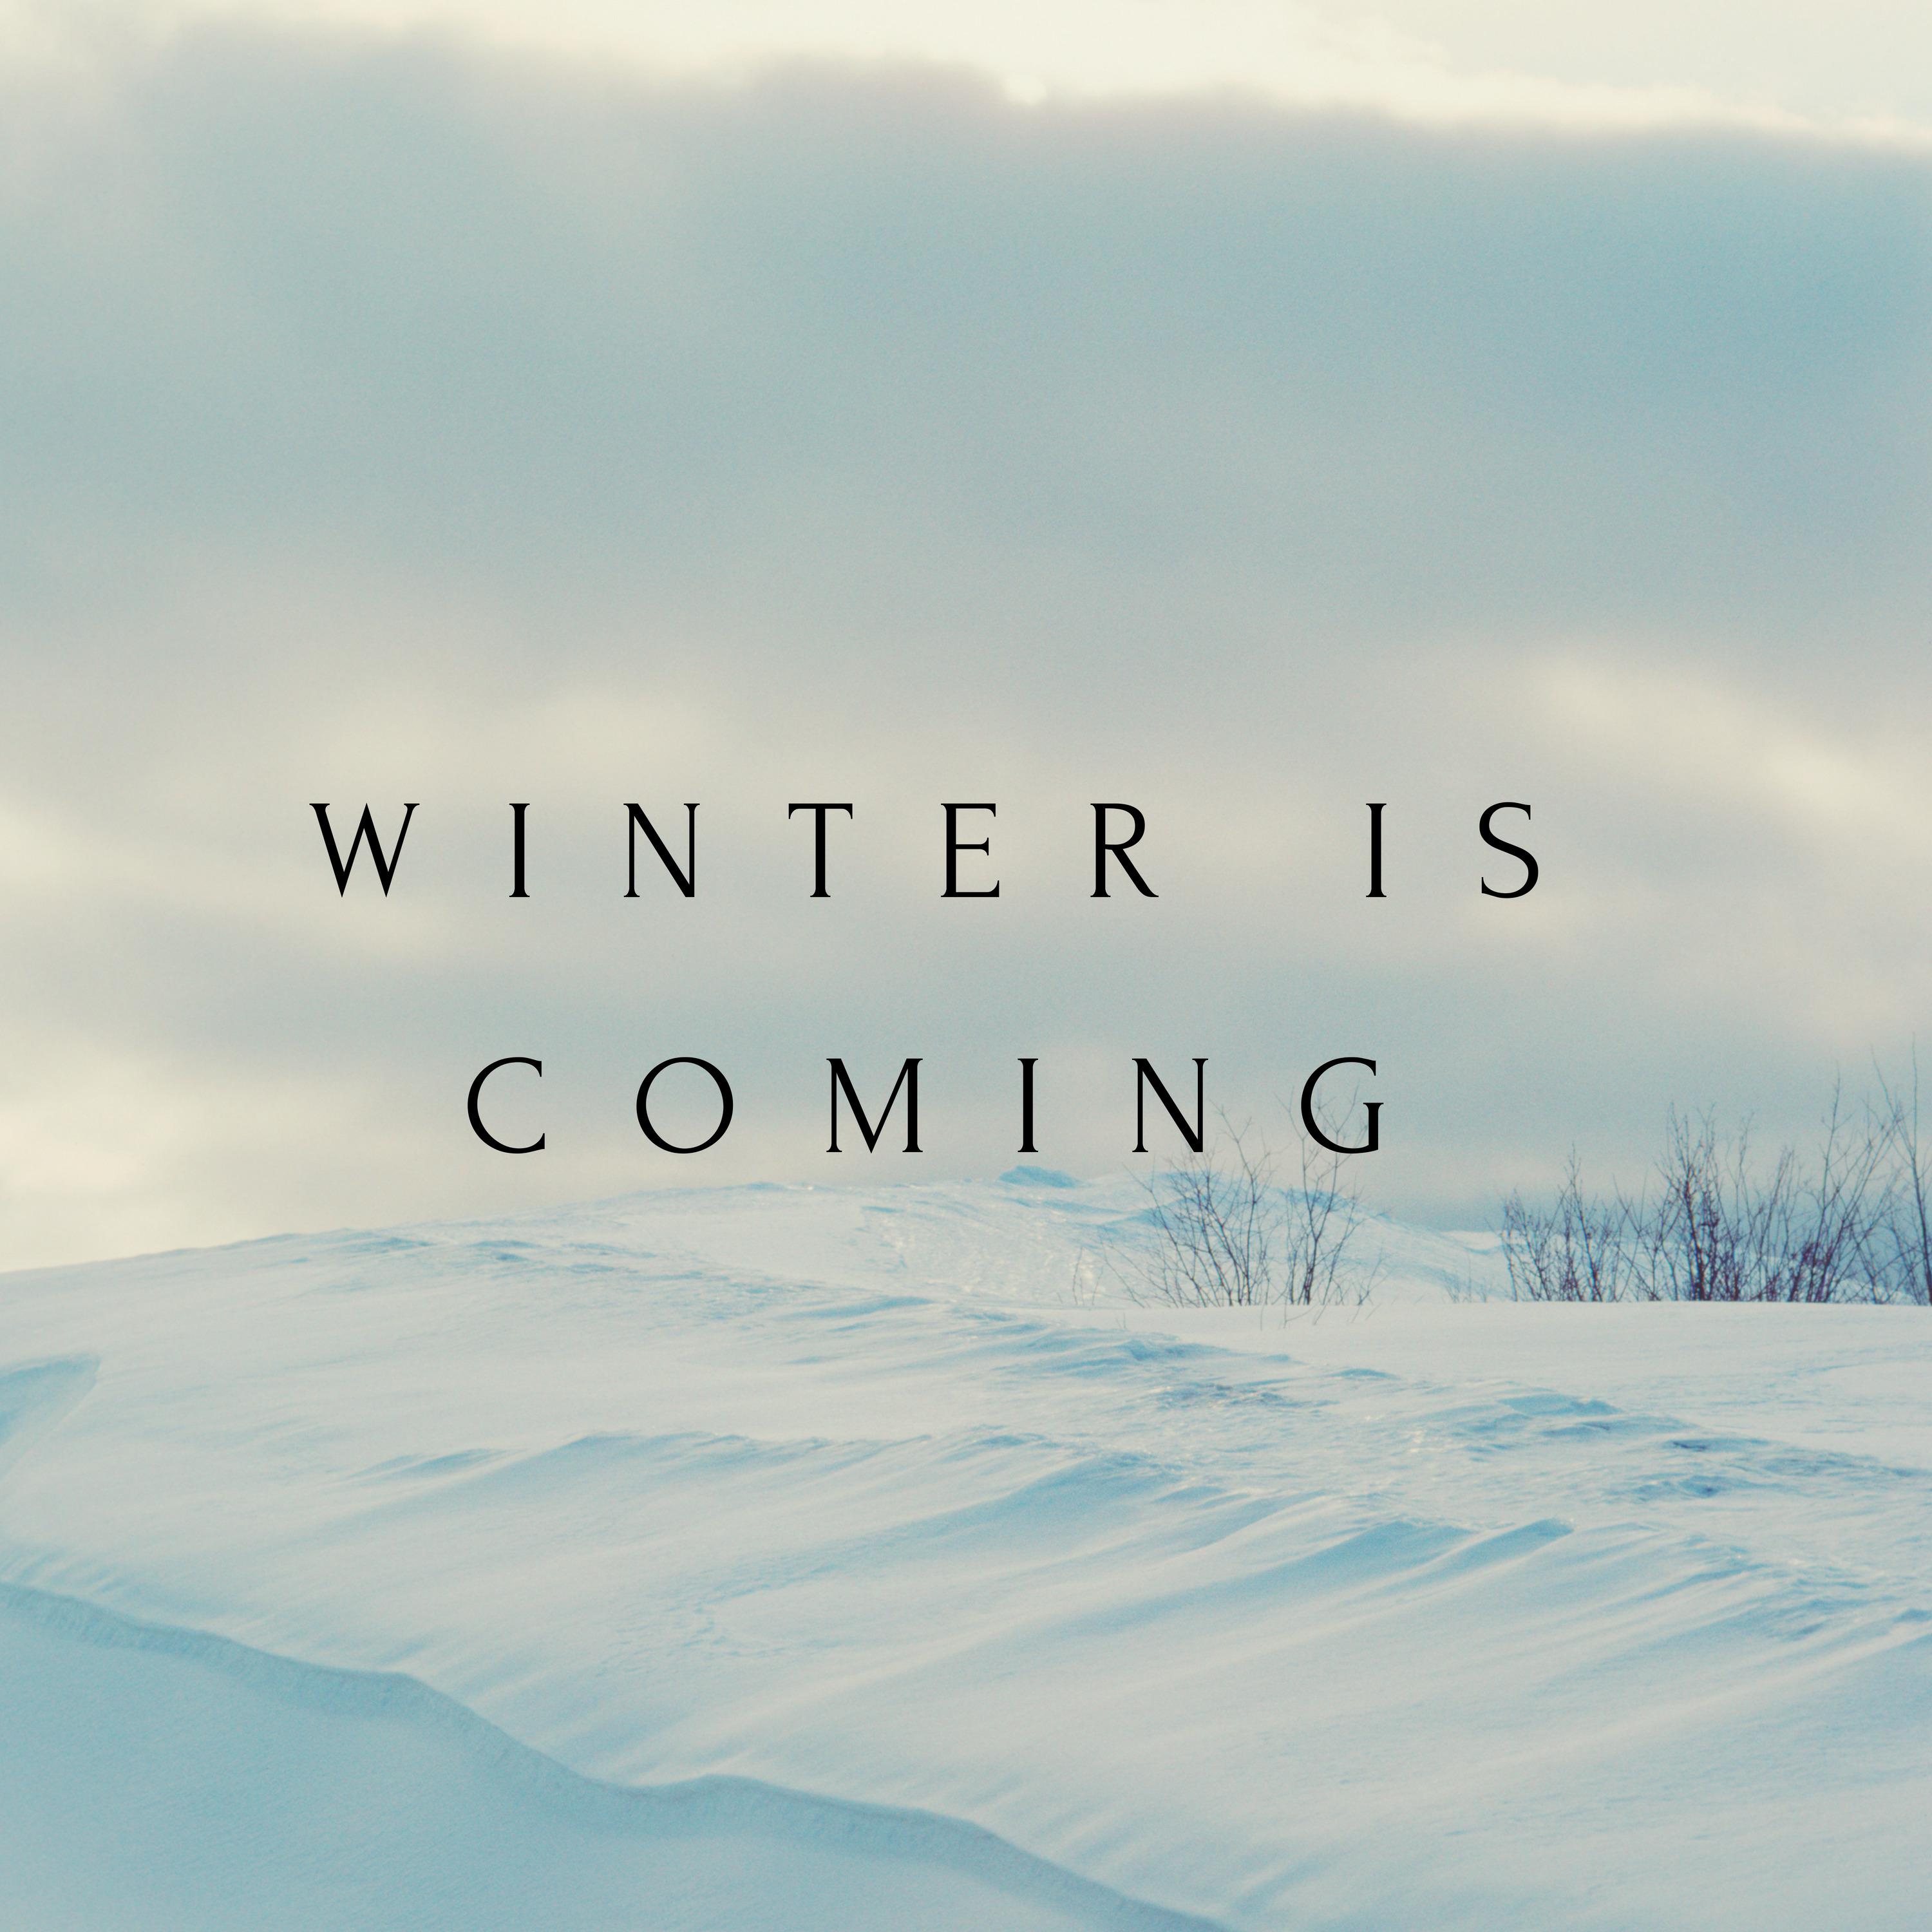 歌手:various artists / various artists 所属专辑:winter is coming